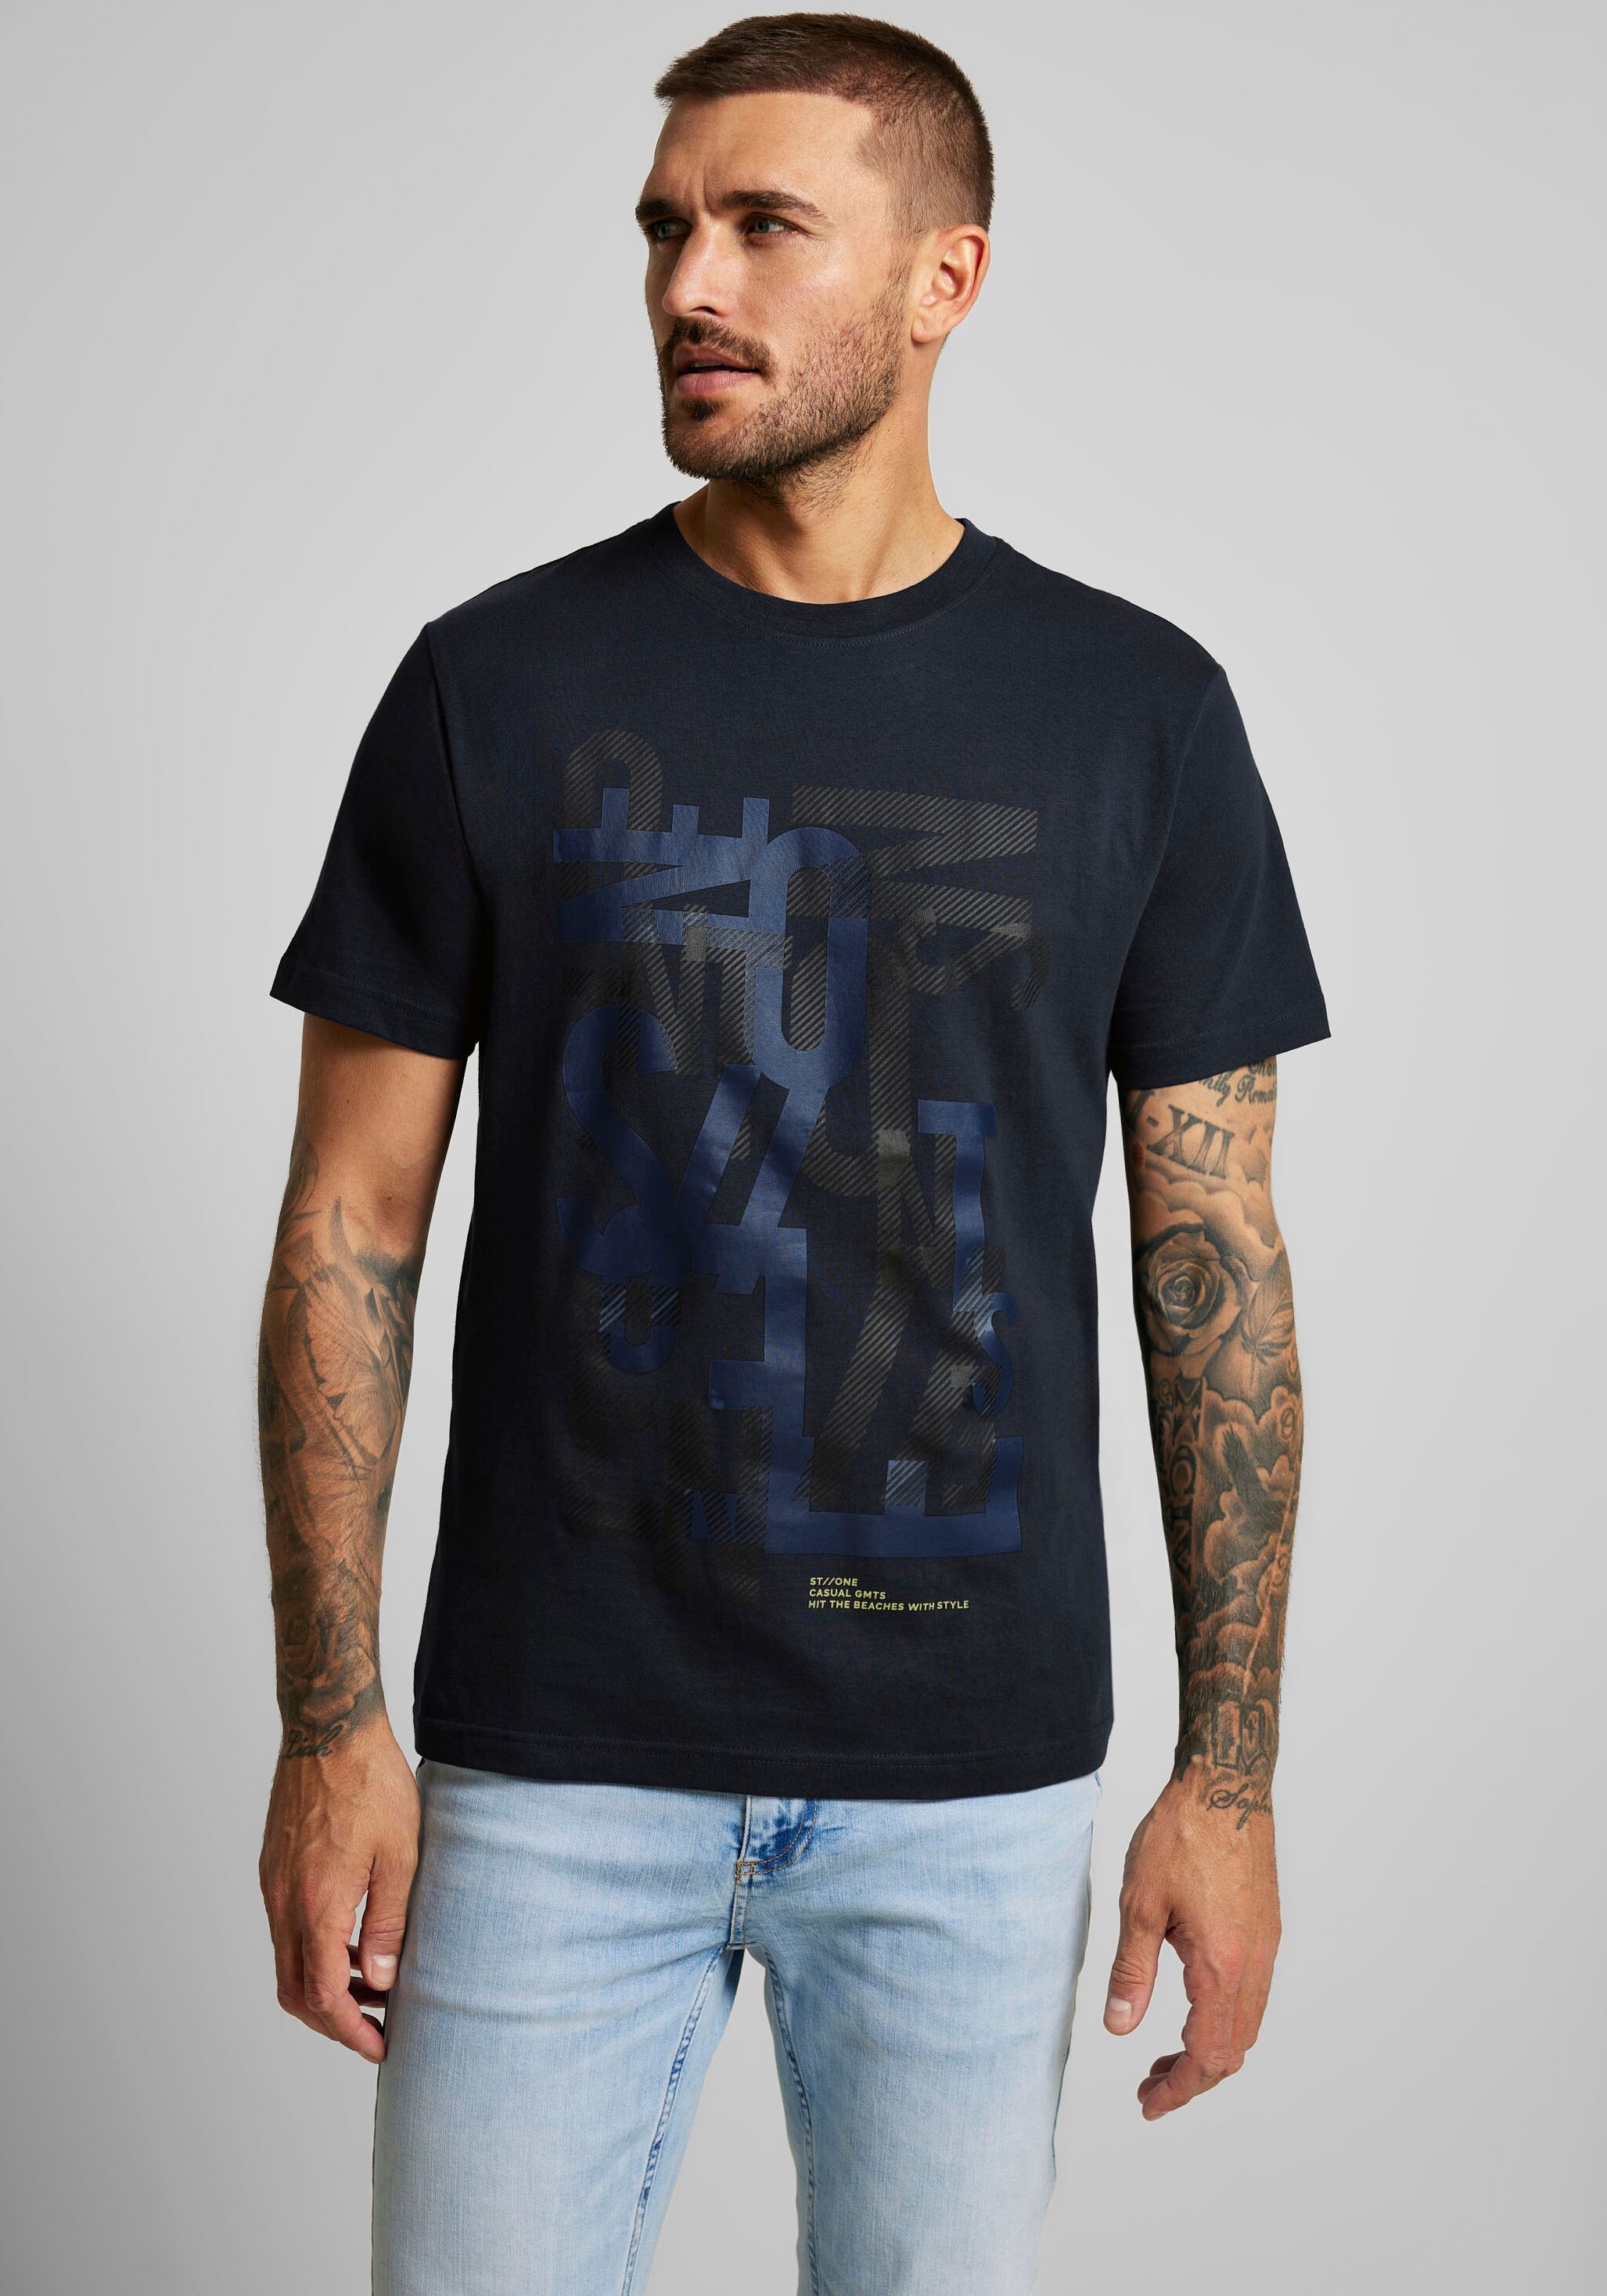 ONE auf Vorderseite STREET MEN kaufen T-Shirt, Wordingprint mit der online